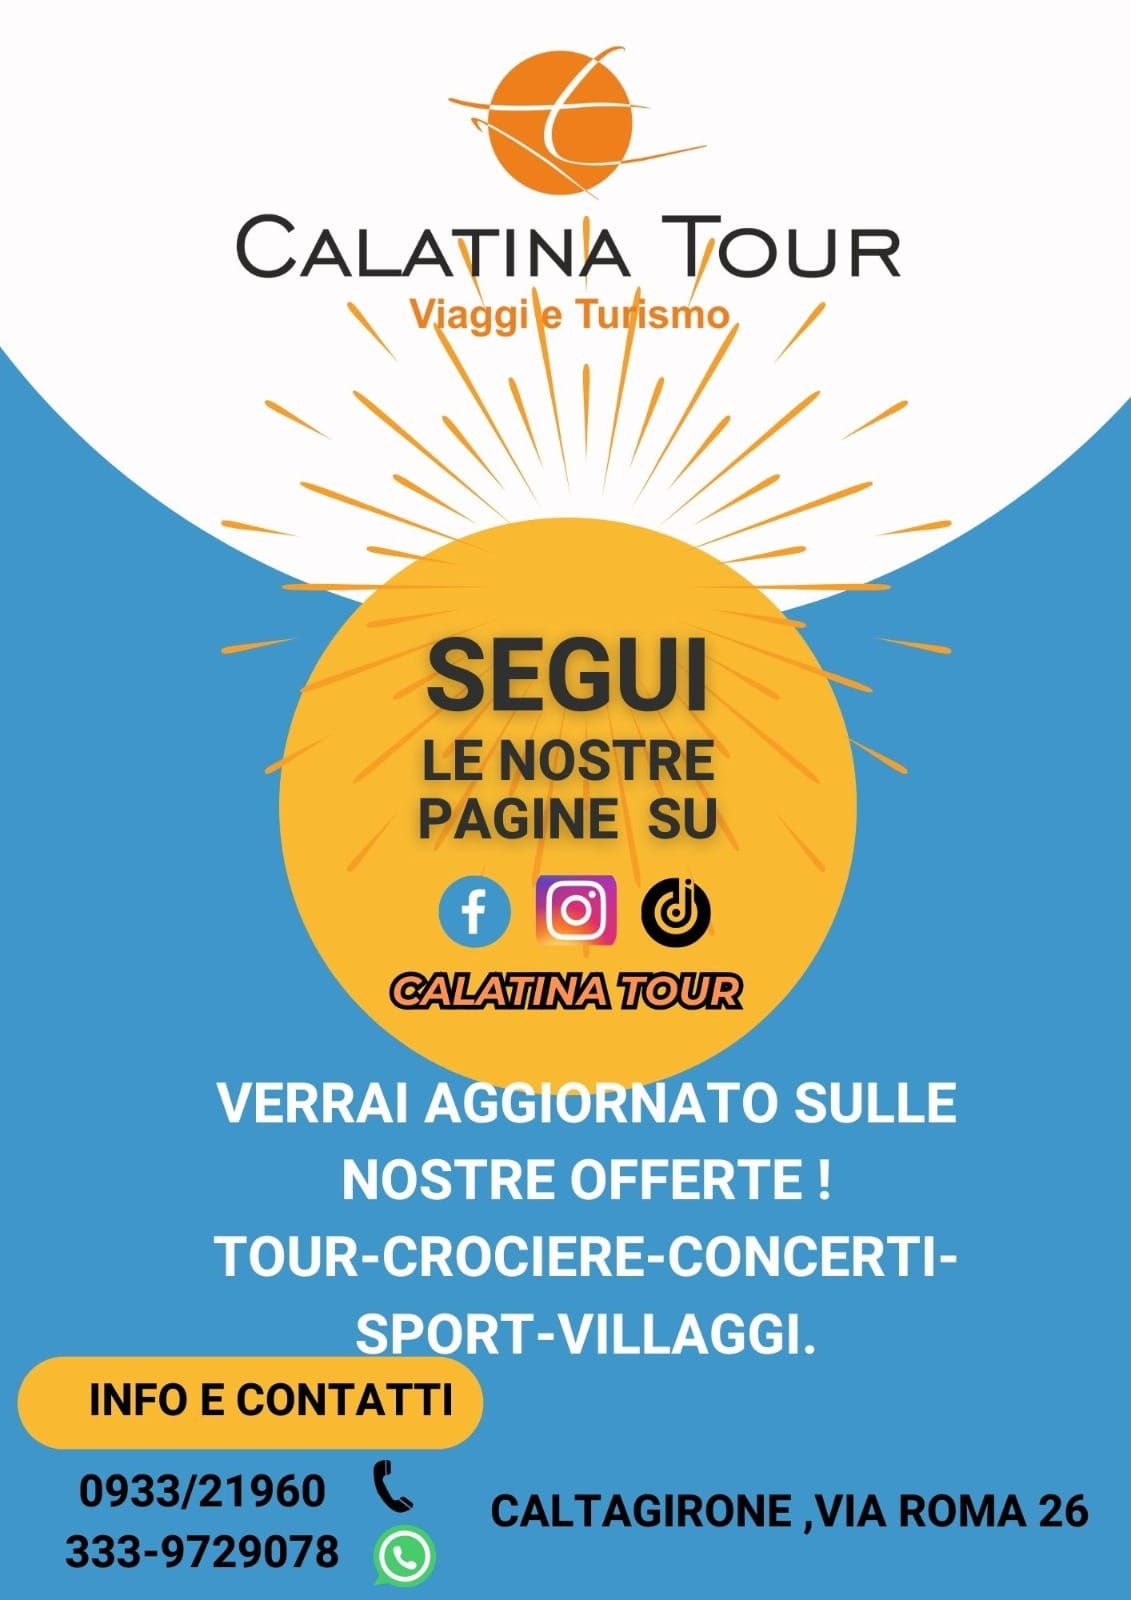 calatina-tour 𝐅𝐢𝐨𝐫𝐢 𝐩𝐫𝐢𝐦𝐨𝐫𝐝𝐢𝐚𝐥𝐢 𝐏𝐚𝐥𝐚𝐳𝐳𝐨 𝐝𝐞𝐥𝐥’𝐀𝐪𝐮𝐢𝐥𝐚, 𝐏𝐢𝐚𝐳𝐳𝐚 𝐌𝐮𝐧𝐢𝐜𝐢𝐩𝐢𝐨 𝟓, 𝐂𝐚𝐥𝐭𝐚𝐠𝐢𝐫𝐨𝐧𝐞 𝐃𝐚𝐥 𝟏𝟖 𝐦𝐚𝐠𝐠𝐢𝐨 𝟐𝟎𝟐𝟒 𝐞 𝐩𝐞𝐫 𝐭𝐮𝐭𝐭𝐚 𝐥’𝐄𝐬𝐭𝐚𝐭𝐞 𝐜𝐚𝐥𝐚𝐭𝐢𝐧𝐚